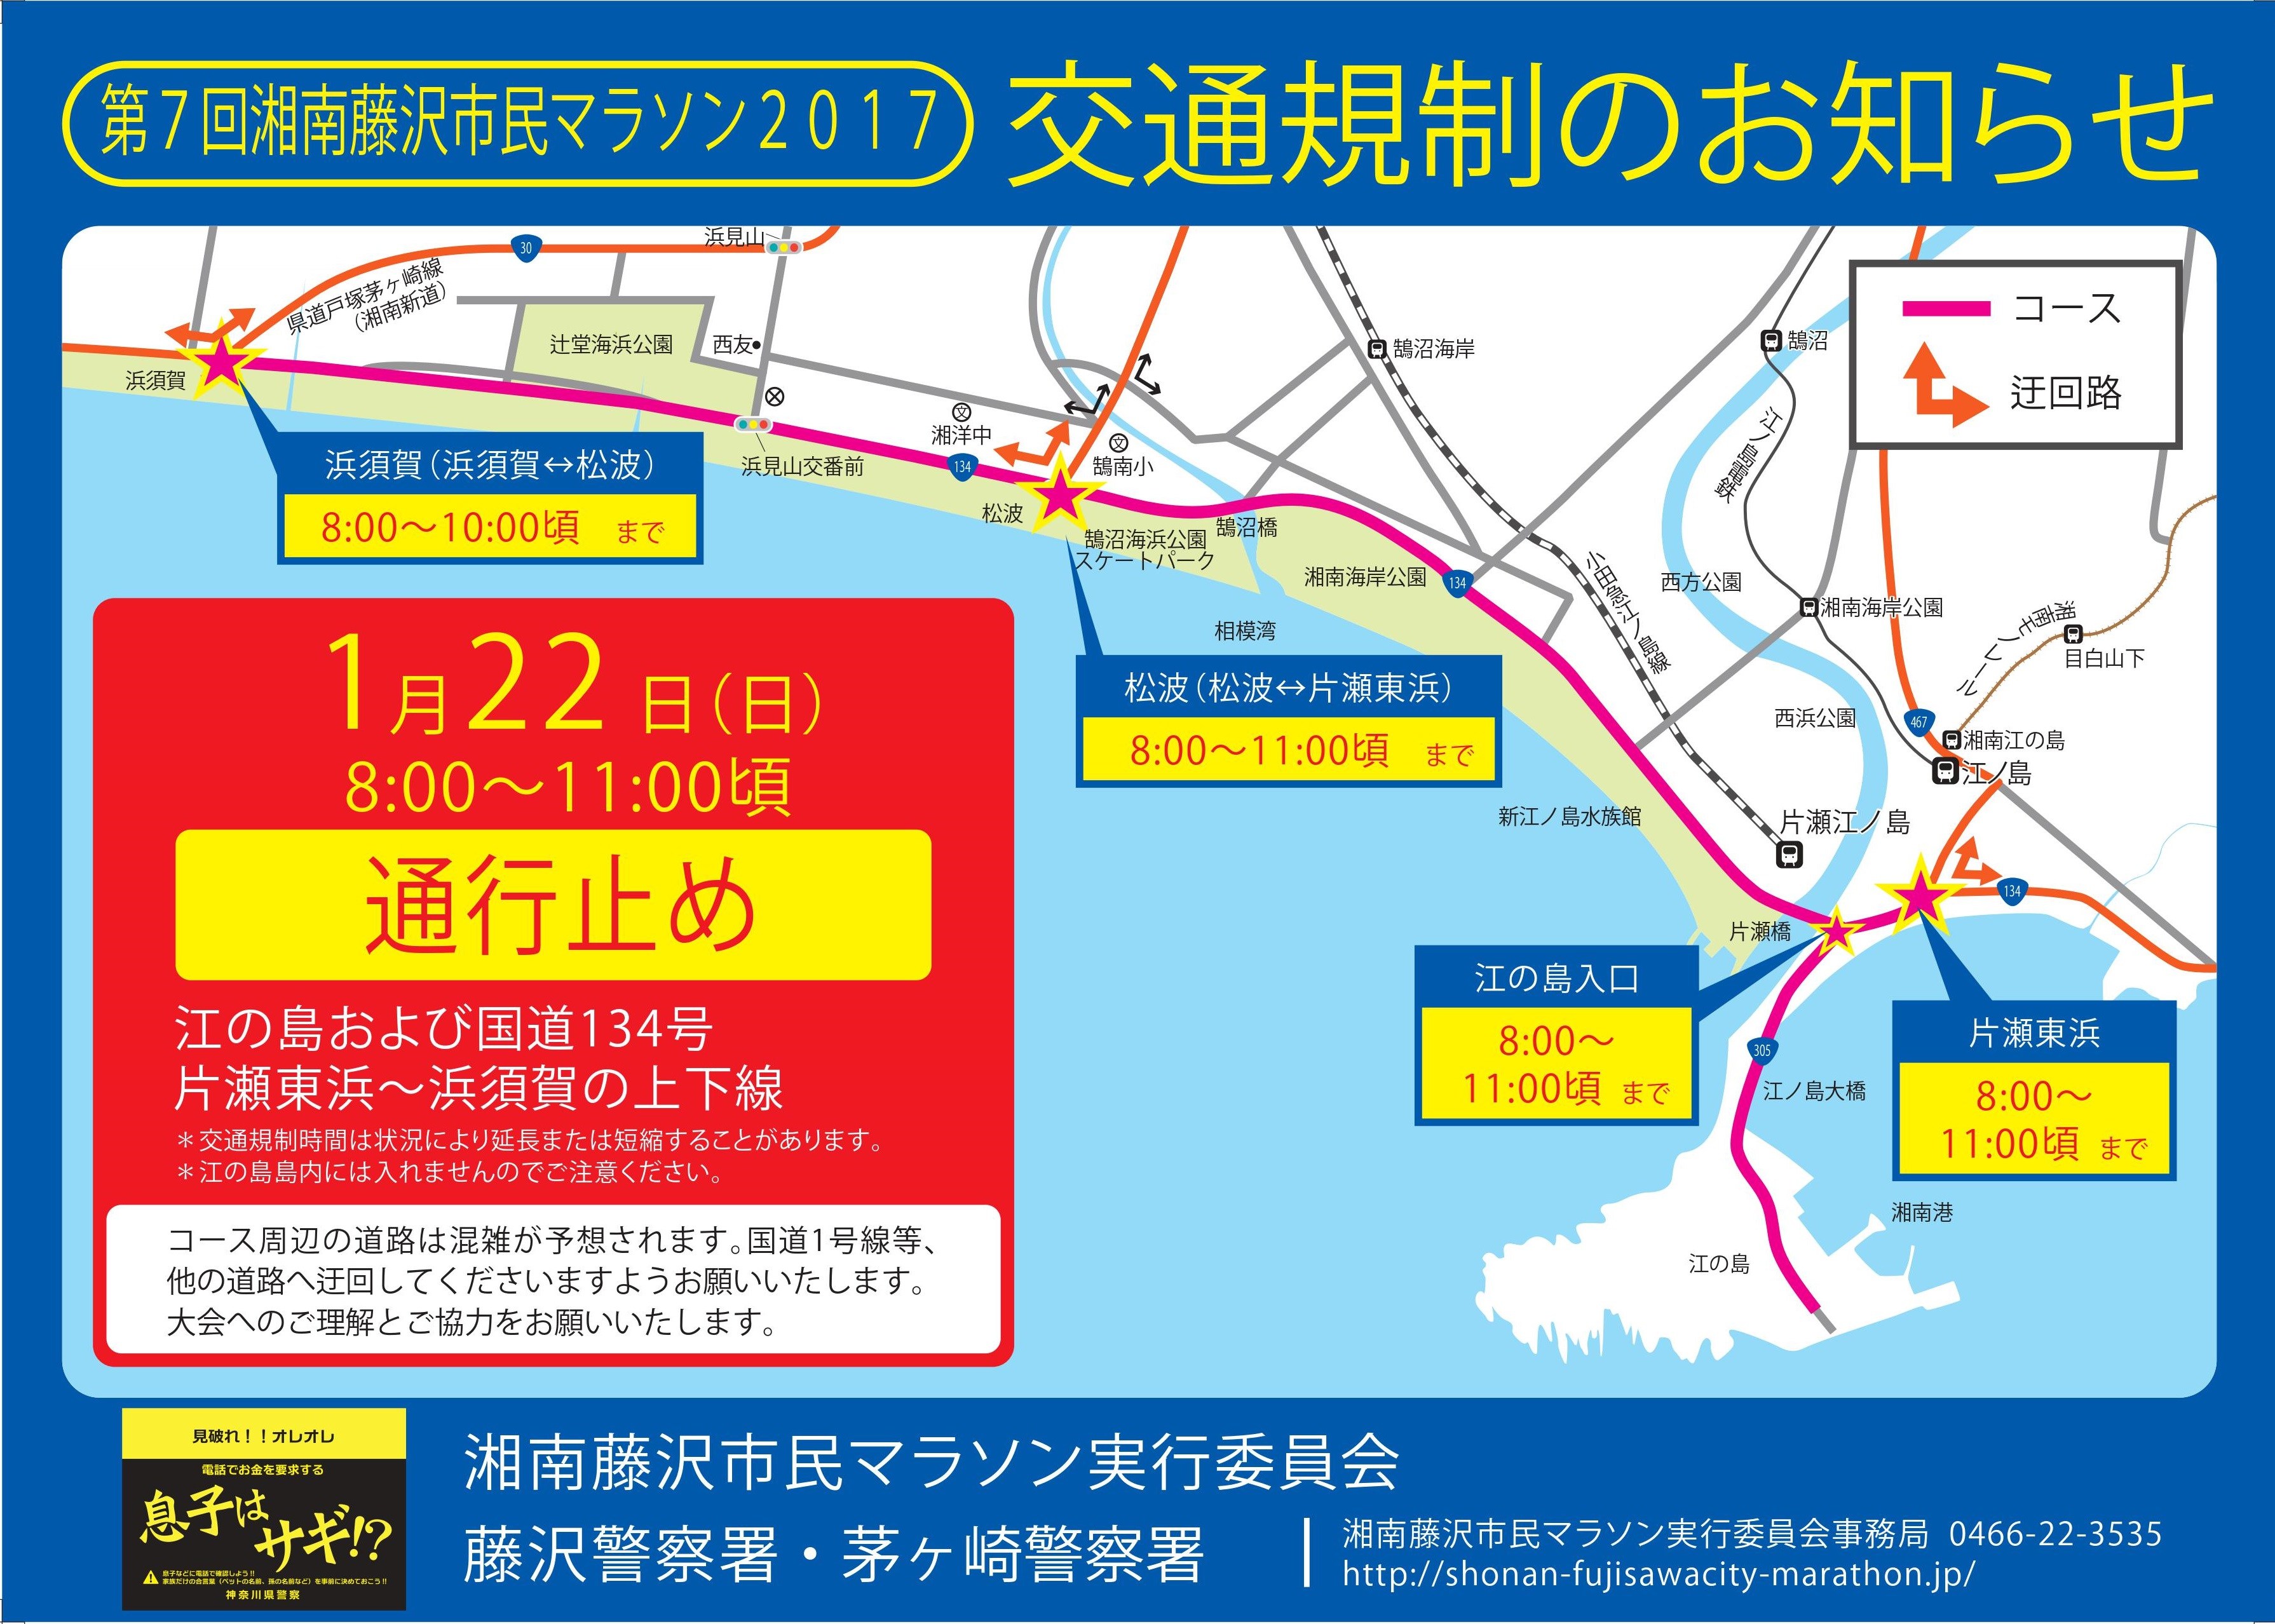 藤沢市民マラソンによる交通規制